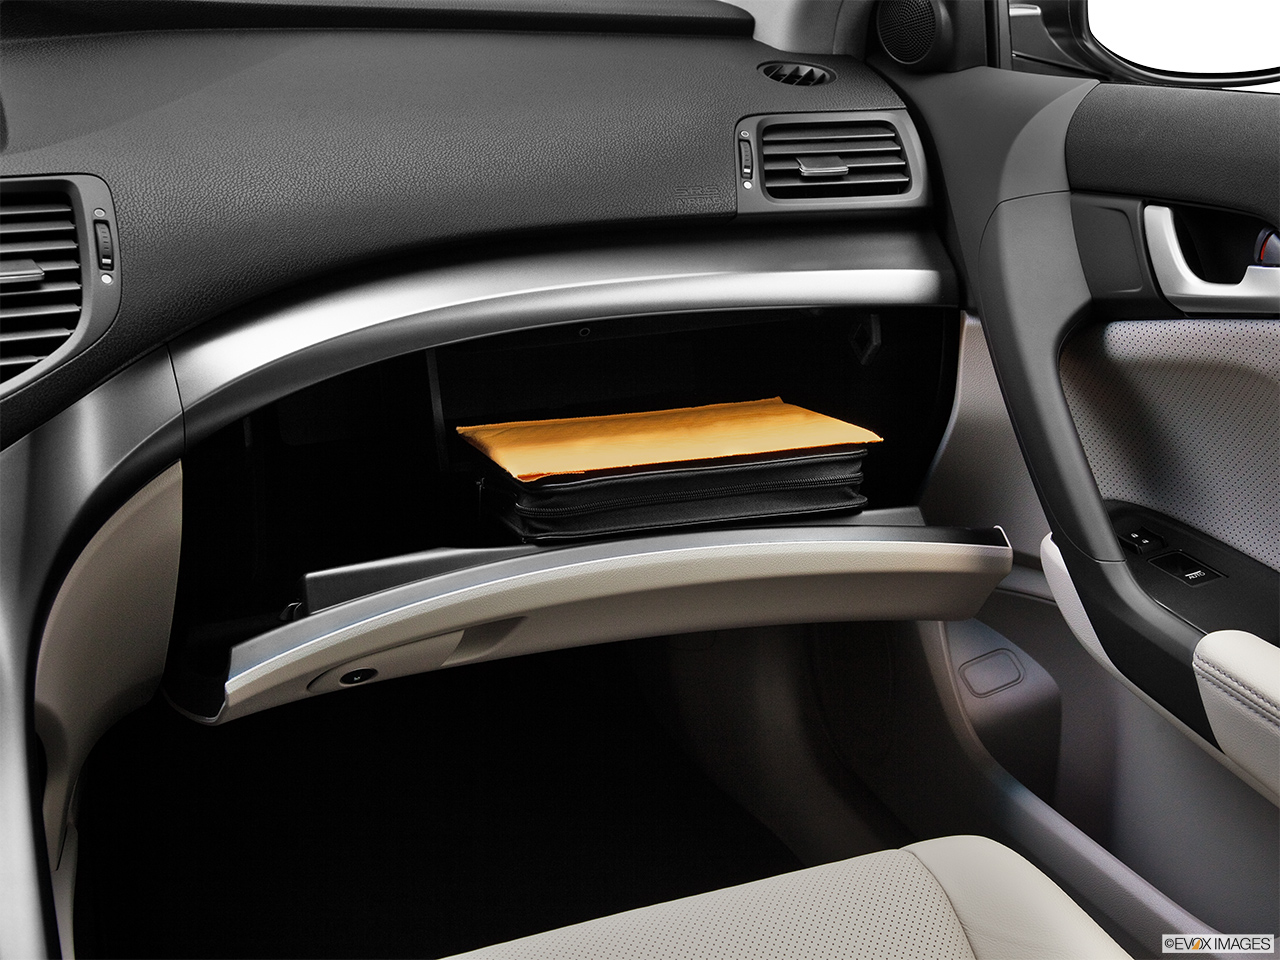 2012 Acura TSX Sport Wagon Glove box open. 